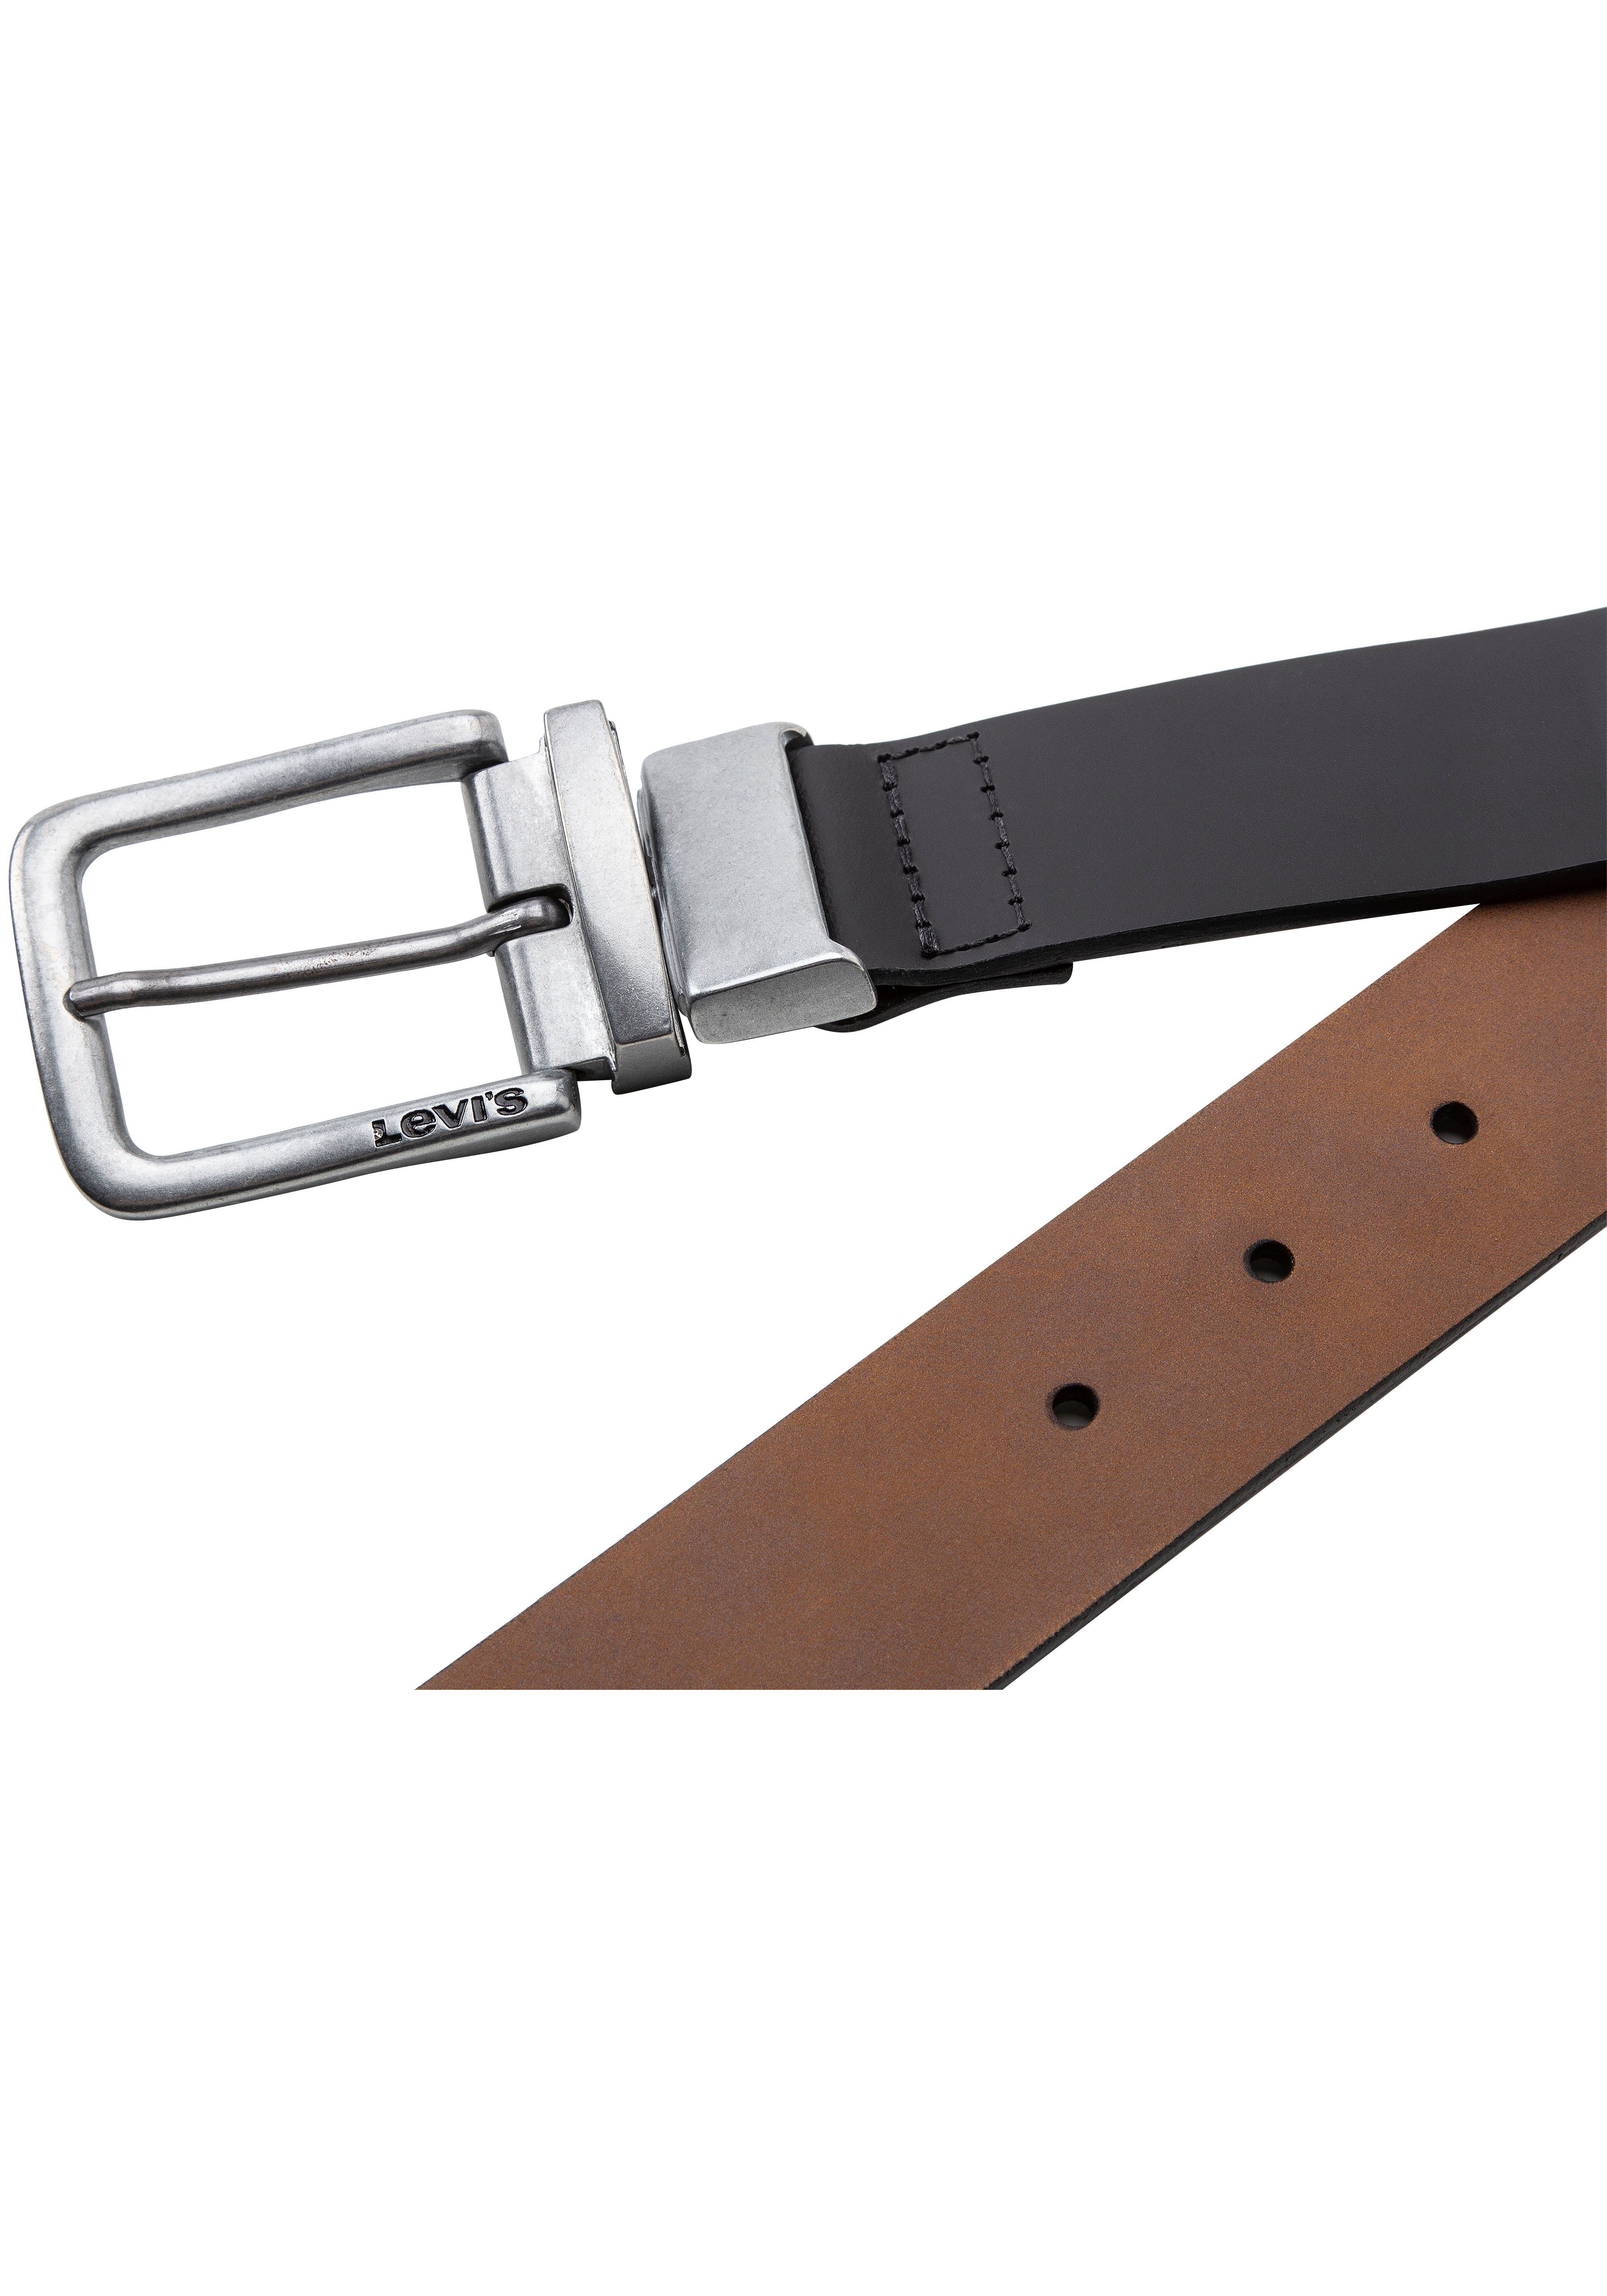 Wendegürtel Classic in Levi's® unterschiedlichen tragbar zwei Farben Reversible Belt